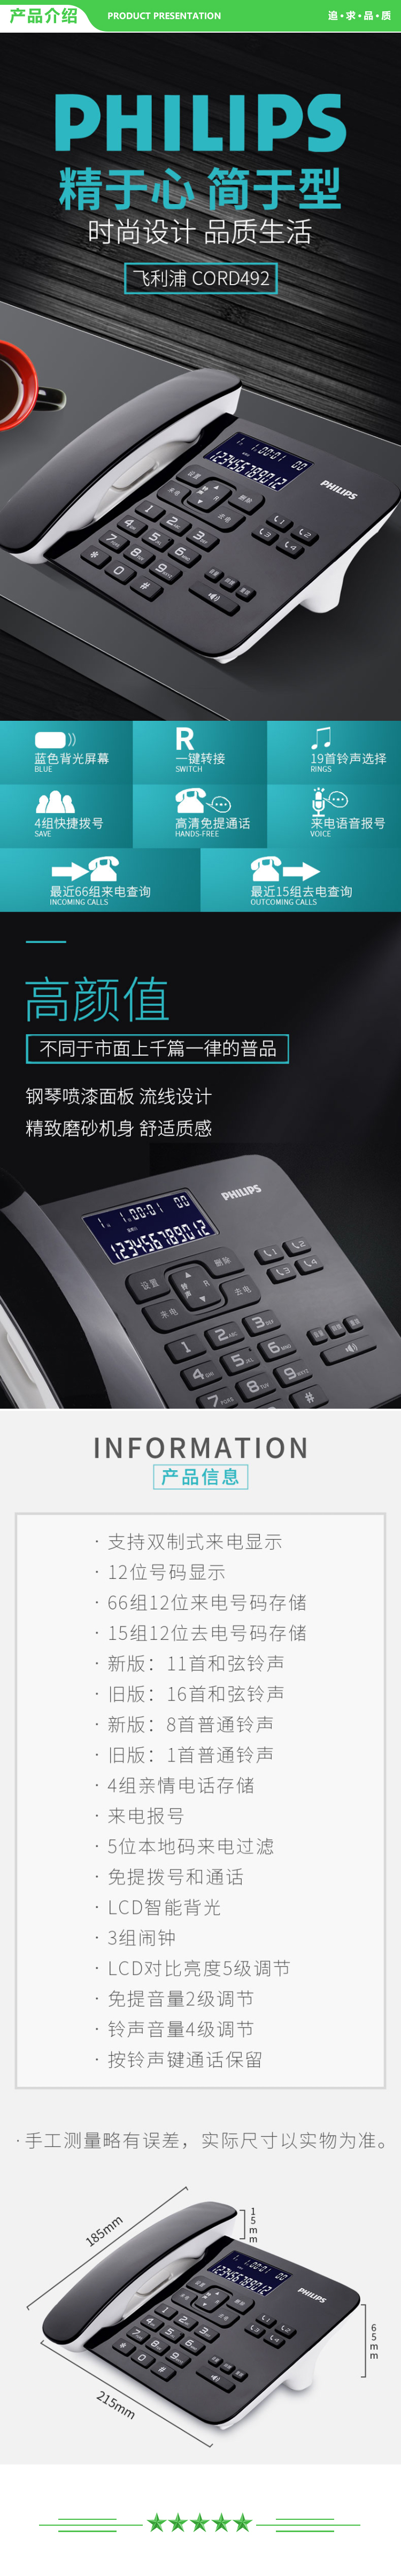 飞利浦 PHILIPS CORD492 电话机座机 固定电话 来电报号 双插孔 一键拨号 (白色) .jpg